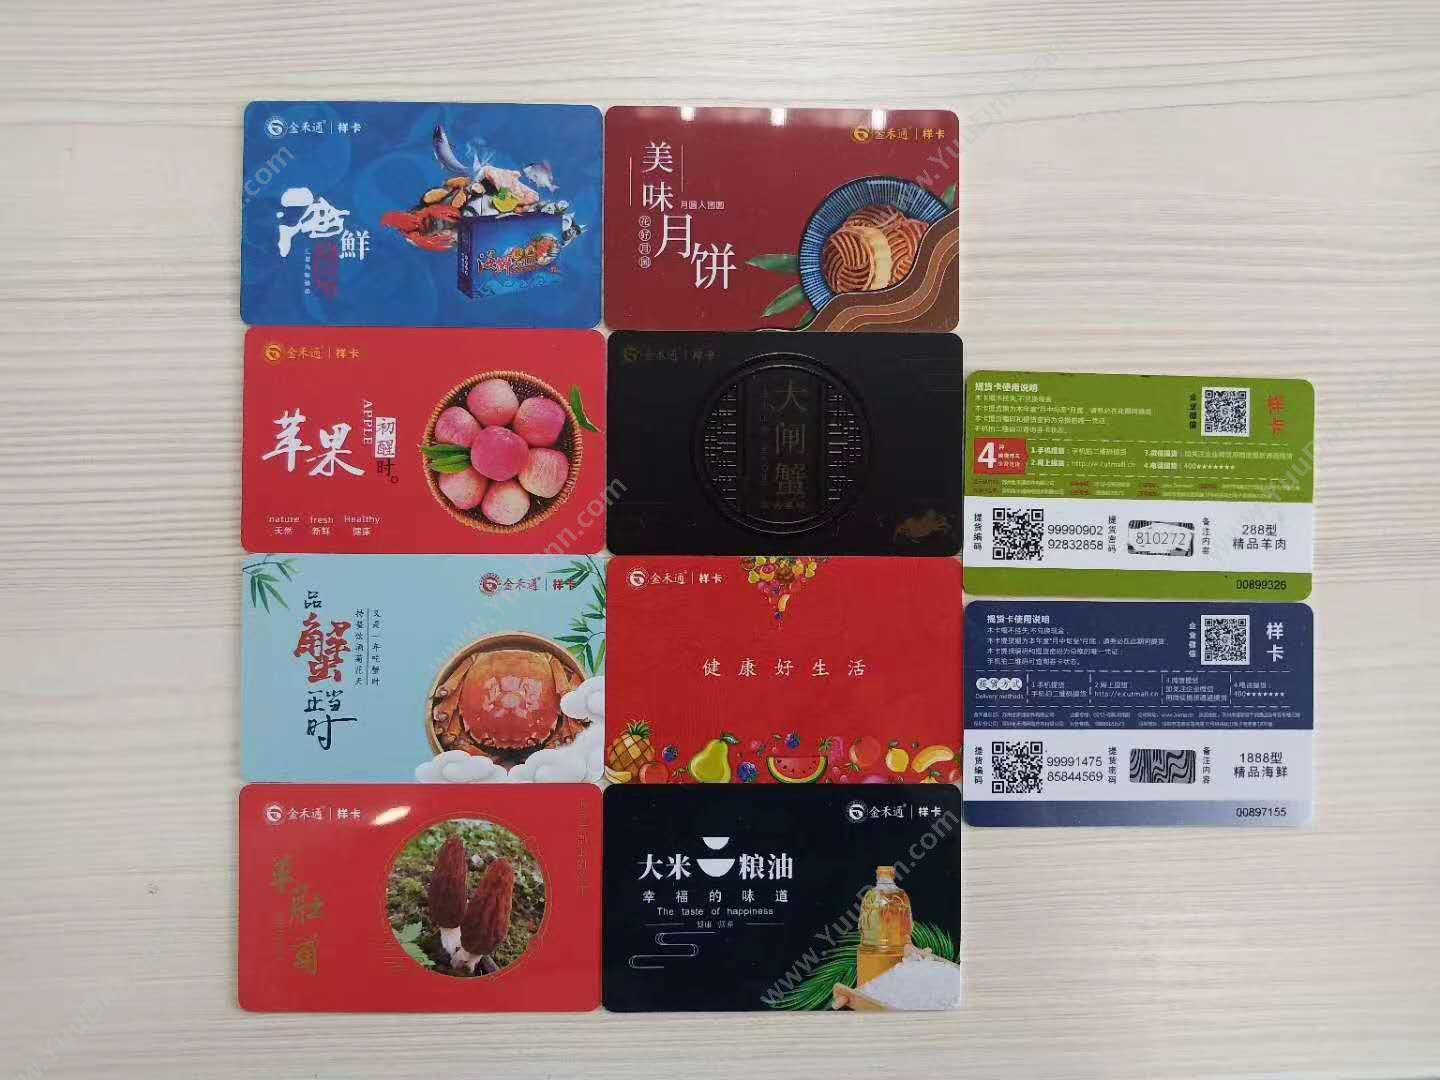 重庆金禾通信息 二维码礼品卡券提货管理系统 食品行业